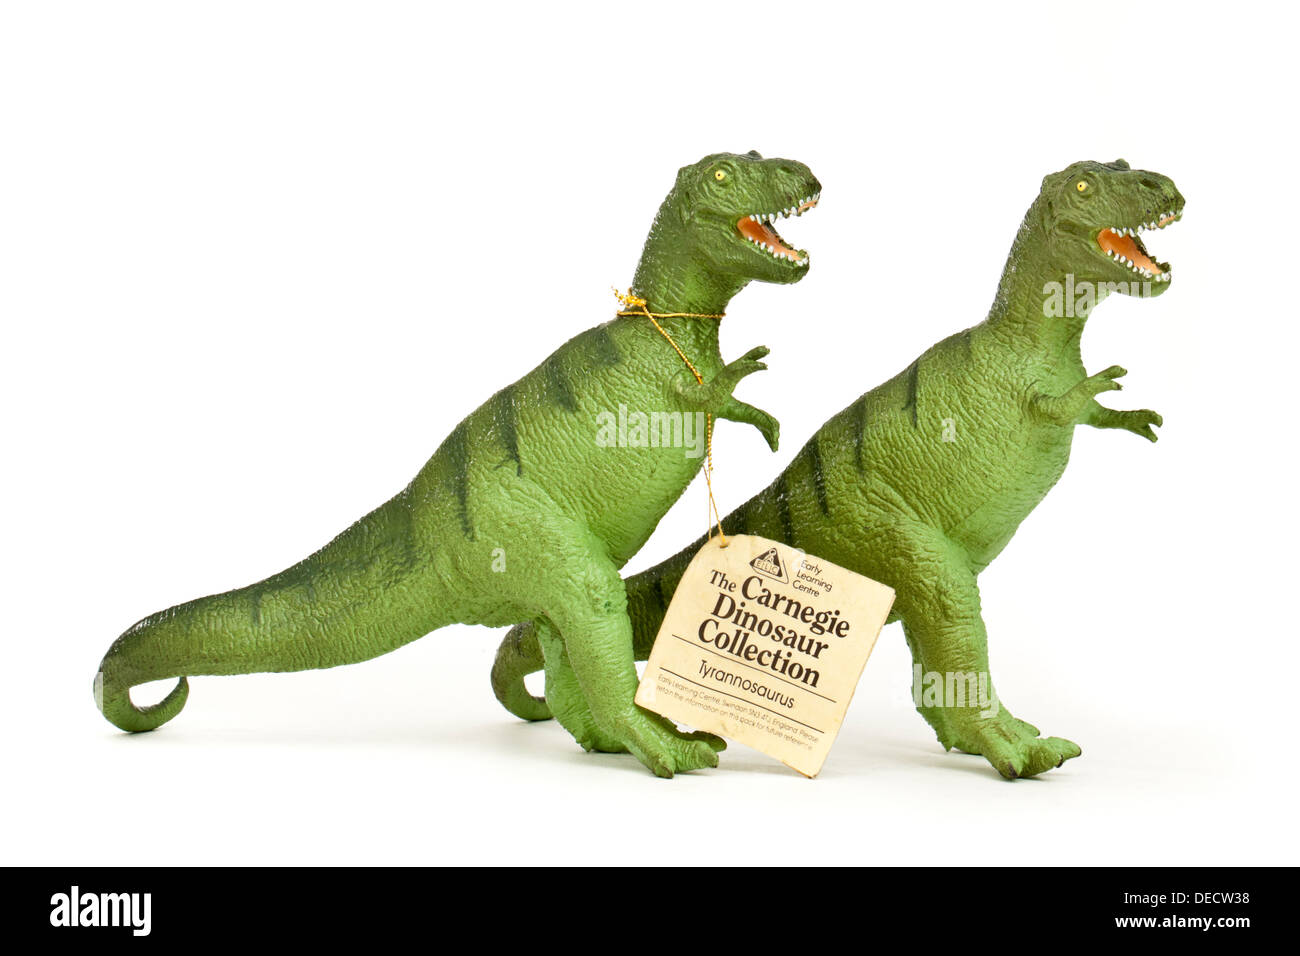 https://c8.alamy.com/compes/decw38/par-de-vintage-1980-tyrannosaurus-rex-dinosaurio-juguetes-de-la-coleccion-de-dinosaurios-carnegie-publicado-por-elc-uk-decw38.jpg